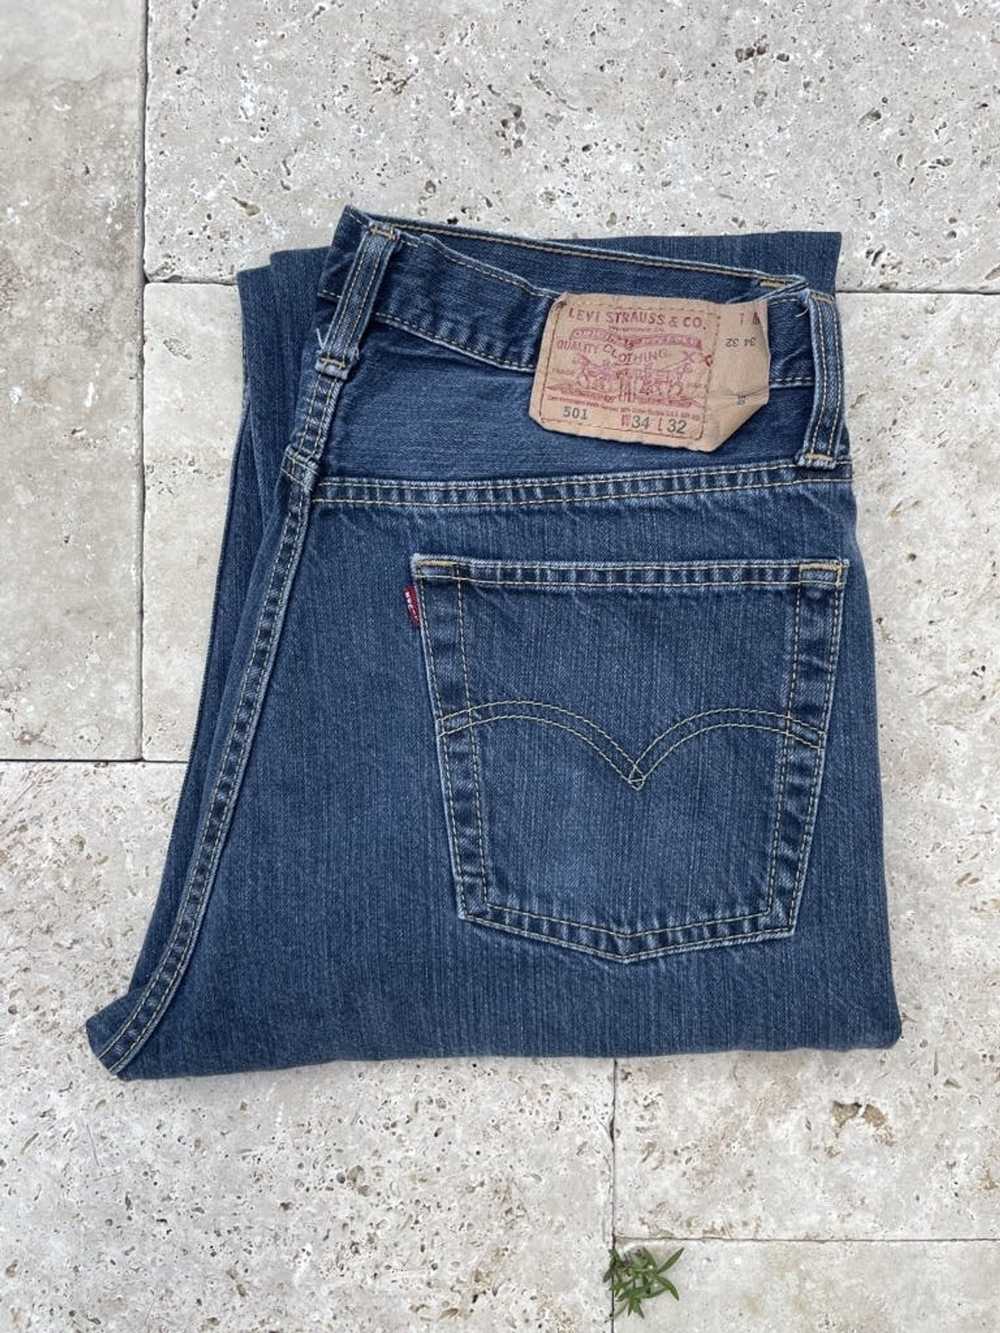 Levi's Vintage Clothing vintage levi's jeans - image 5